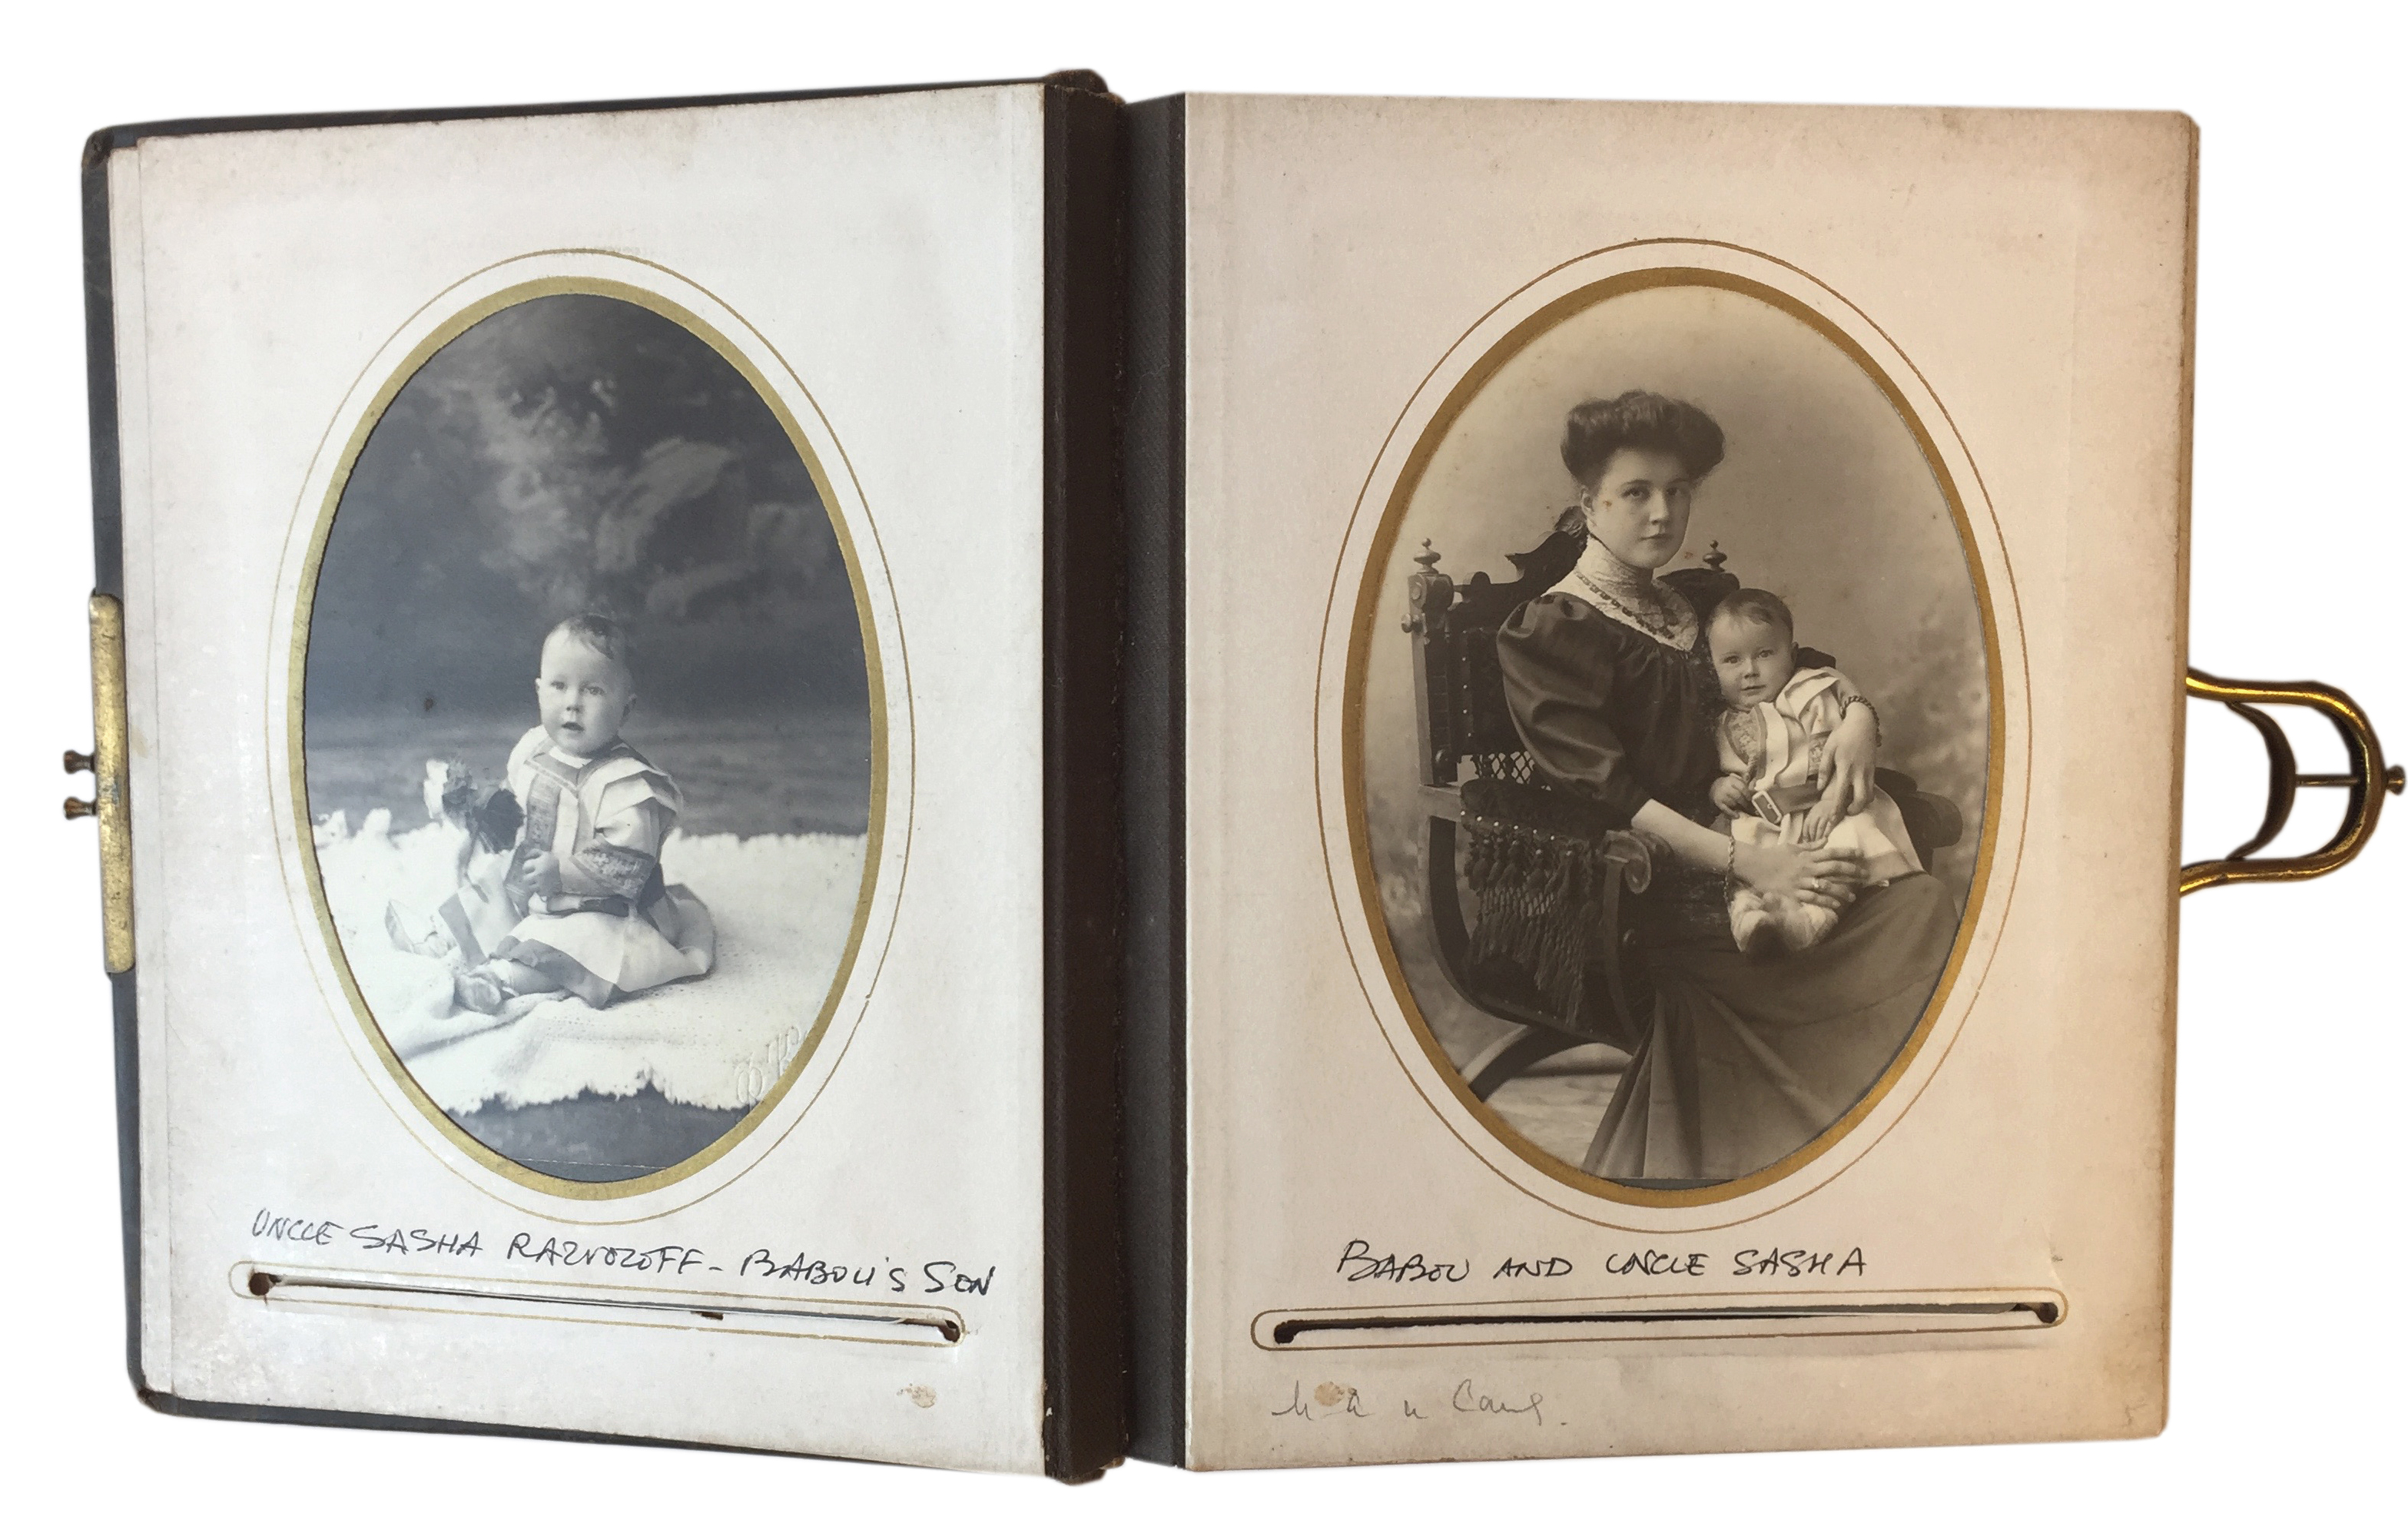 фотоальбом семьи с замком до 1917 года, кожа, 34 фотографии, 15 листов с дарственной надписью « Моей дорогой бебечке от папа 5 апреля 1898 », 21 x 7 см., большинство фотографий подписаны 